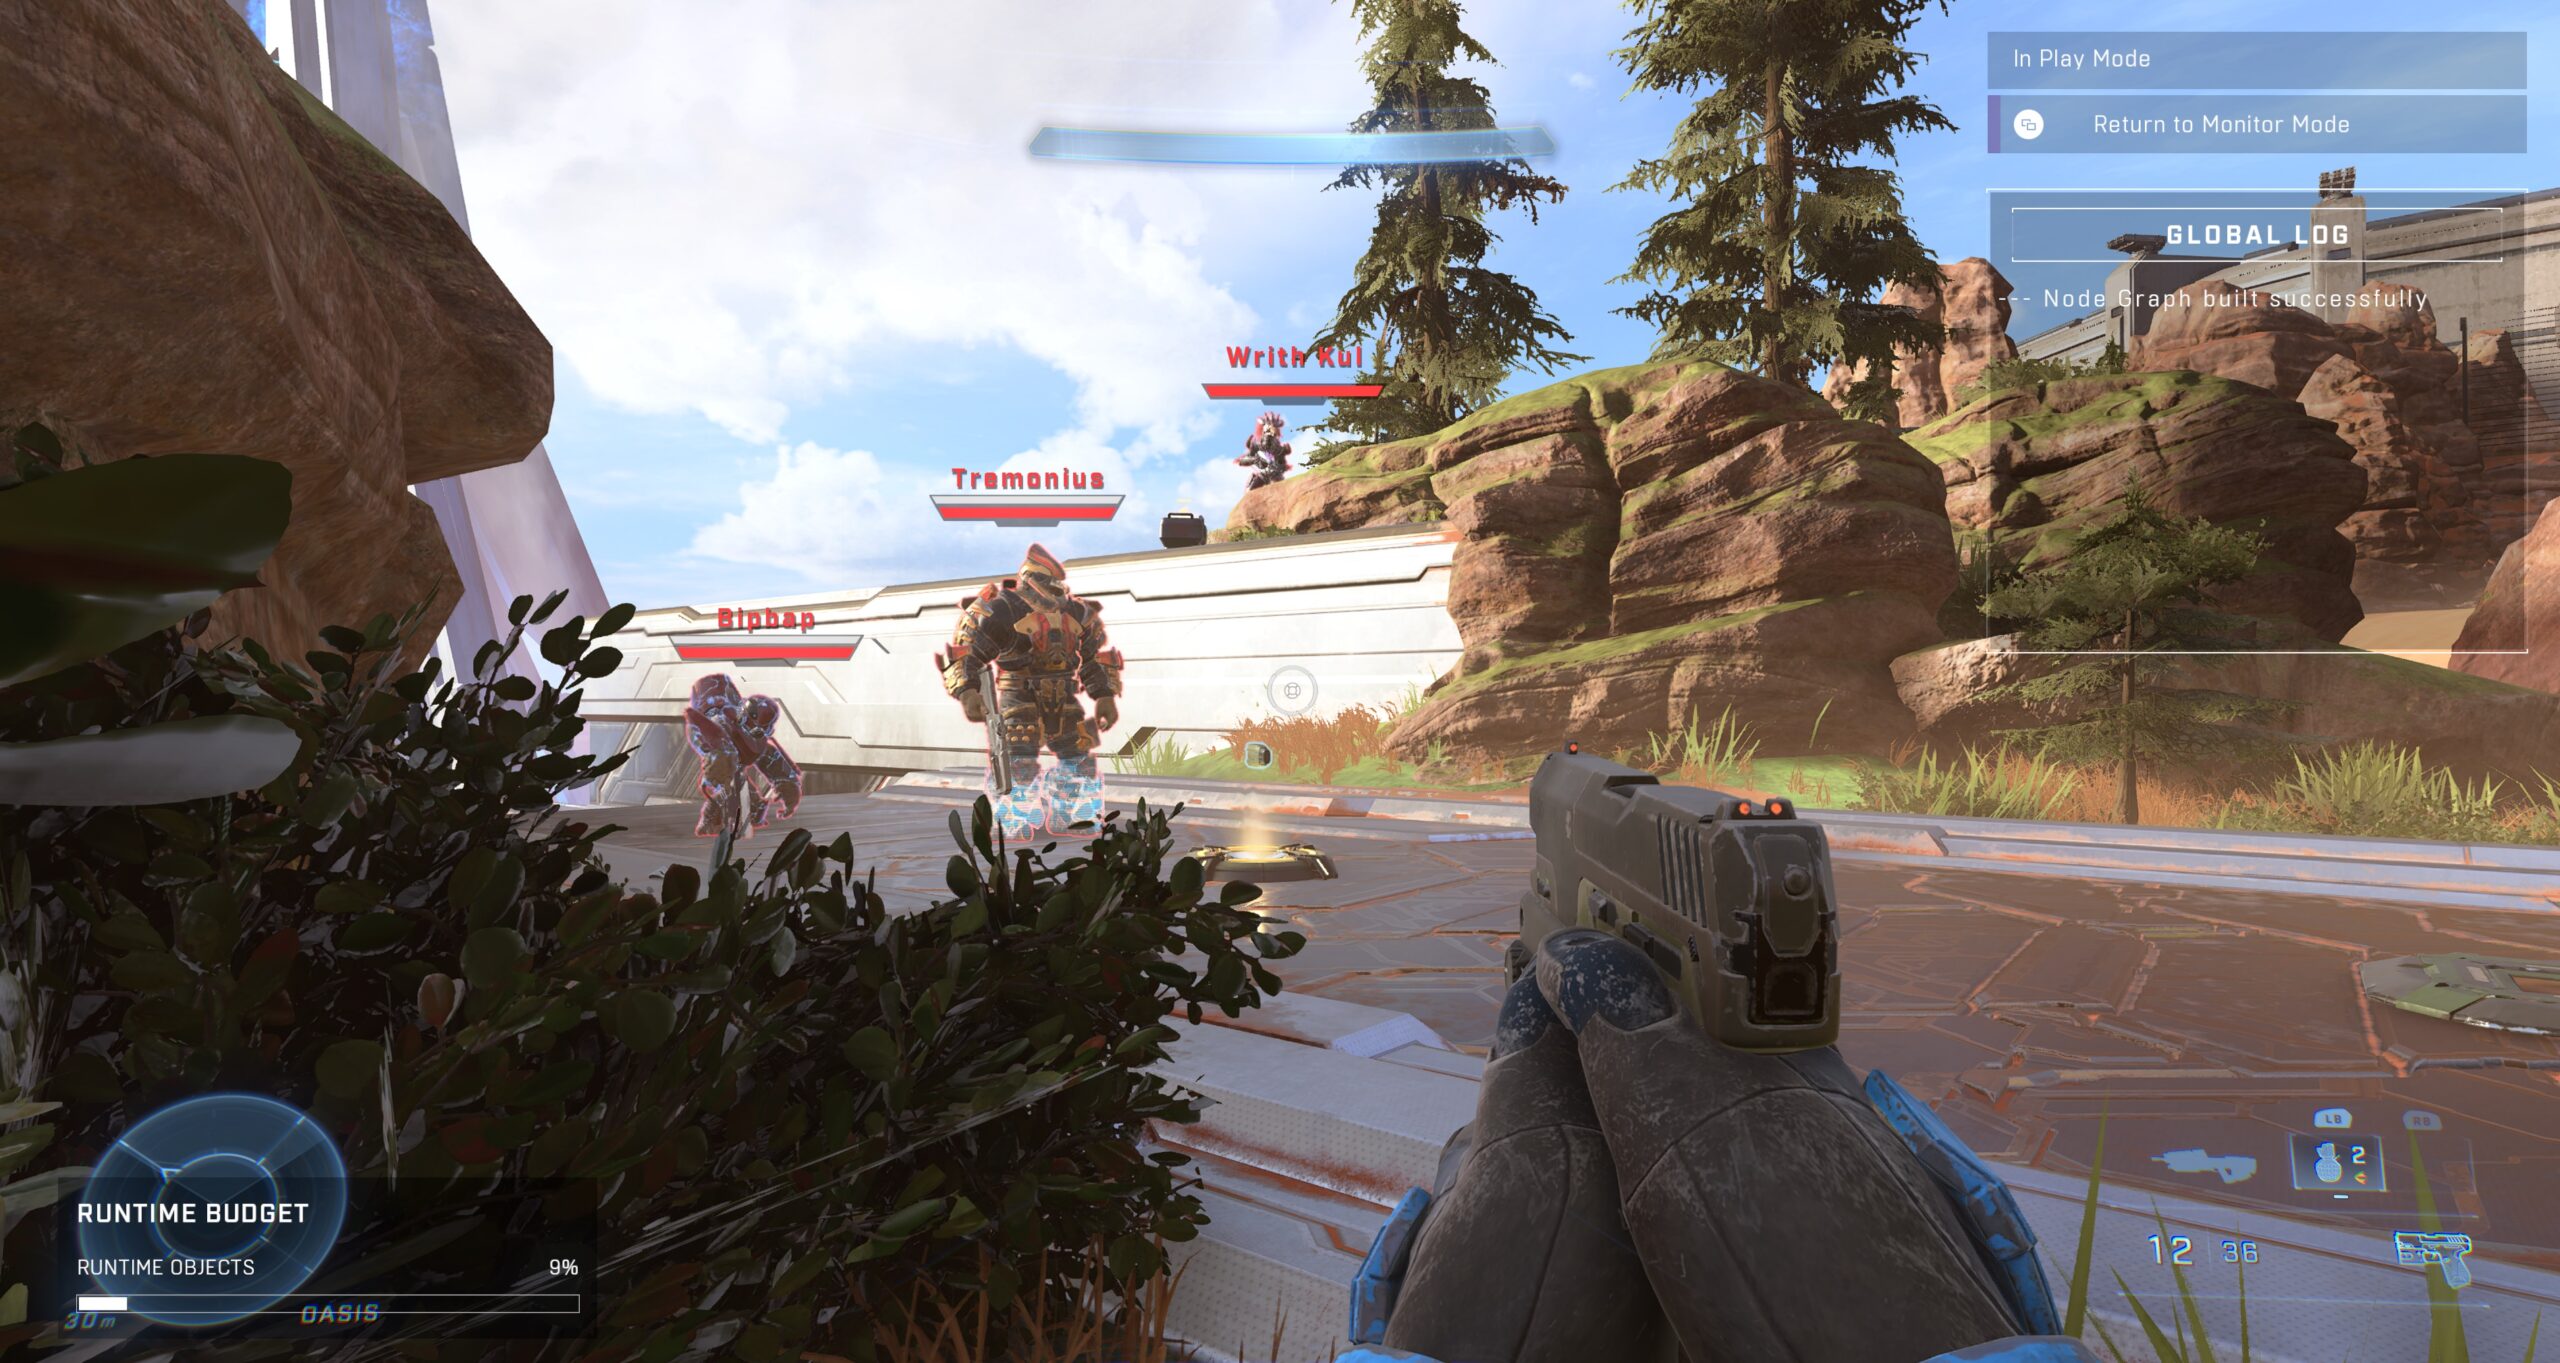 Скриншот Halo Infinite с важными целями (Бипбап, Тремониус, Врит Кул), размещенными на карте Оазис в Кузнице.